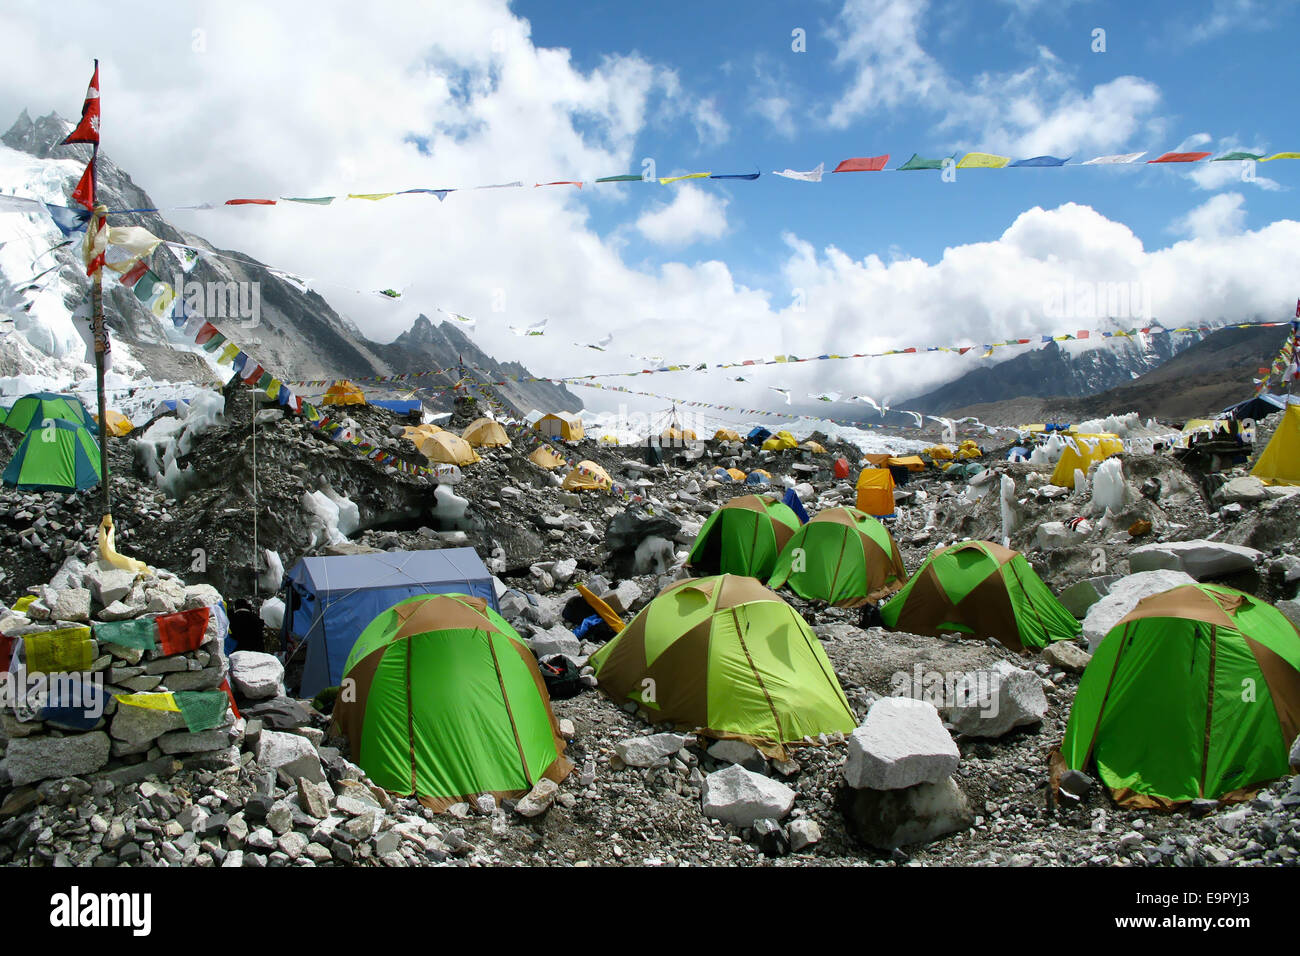 Bunte Zelte und tibetische Gebetsfahnen in Nepal, Everest Base Camp, Khumbu-Region. Stockfoto